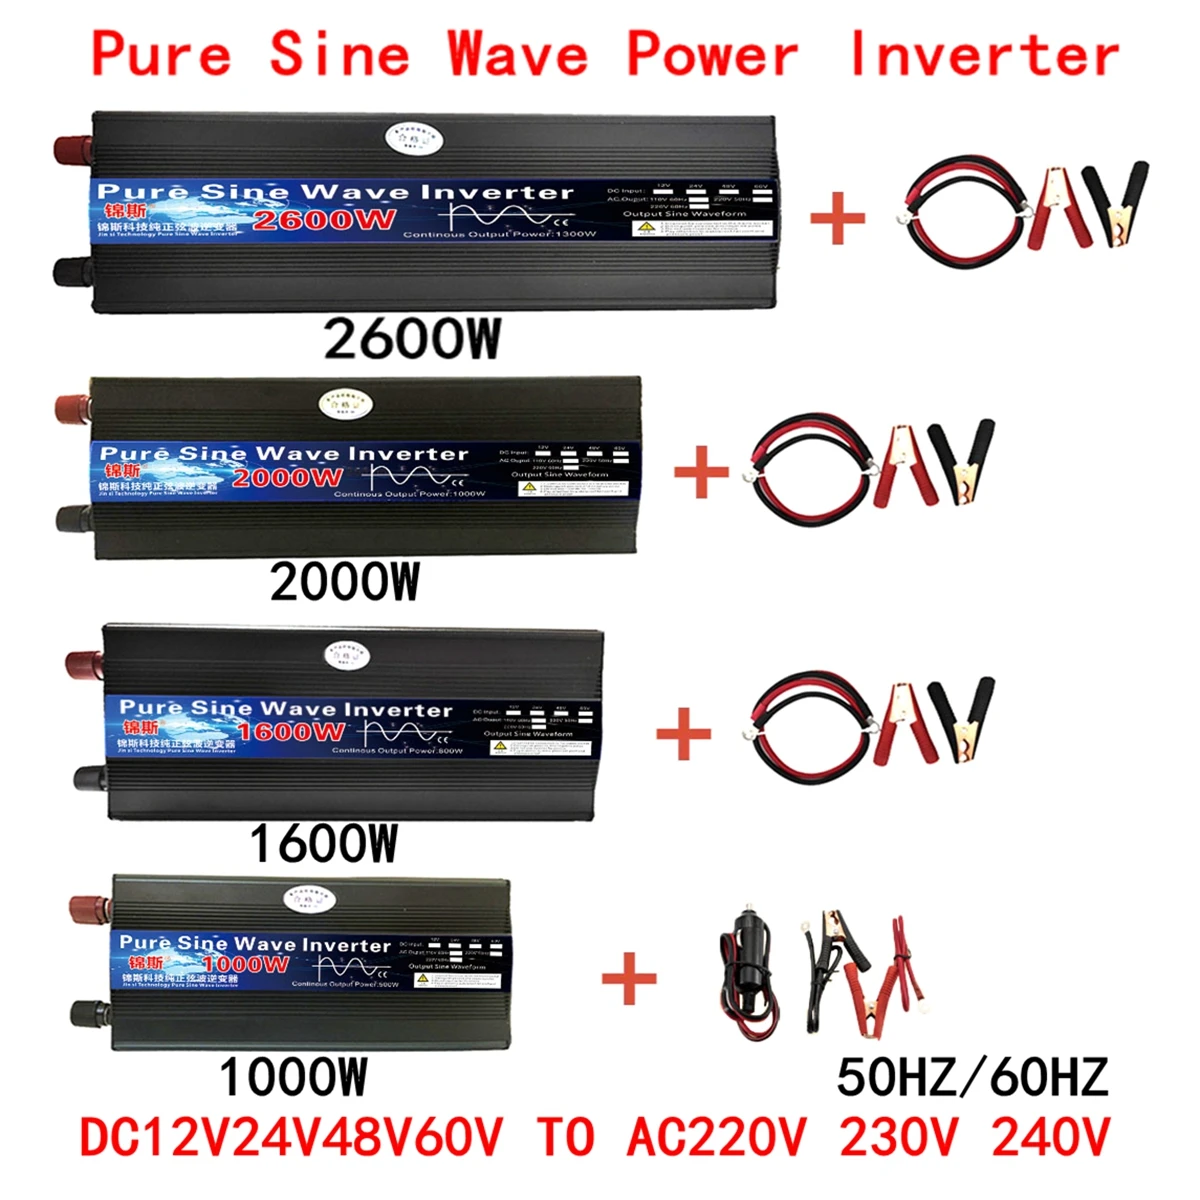 1000W 2000W 2600W inverter 12v 220v Pure Sine Wave DC 12V/24V To AC 220V  60HZ Power Converter Booster For Household Car Inverter